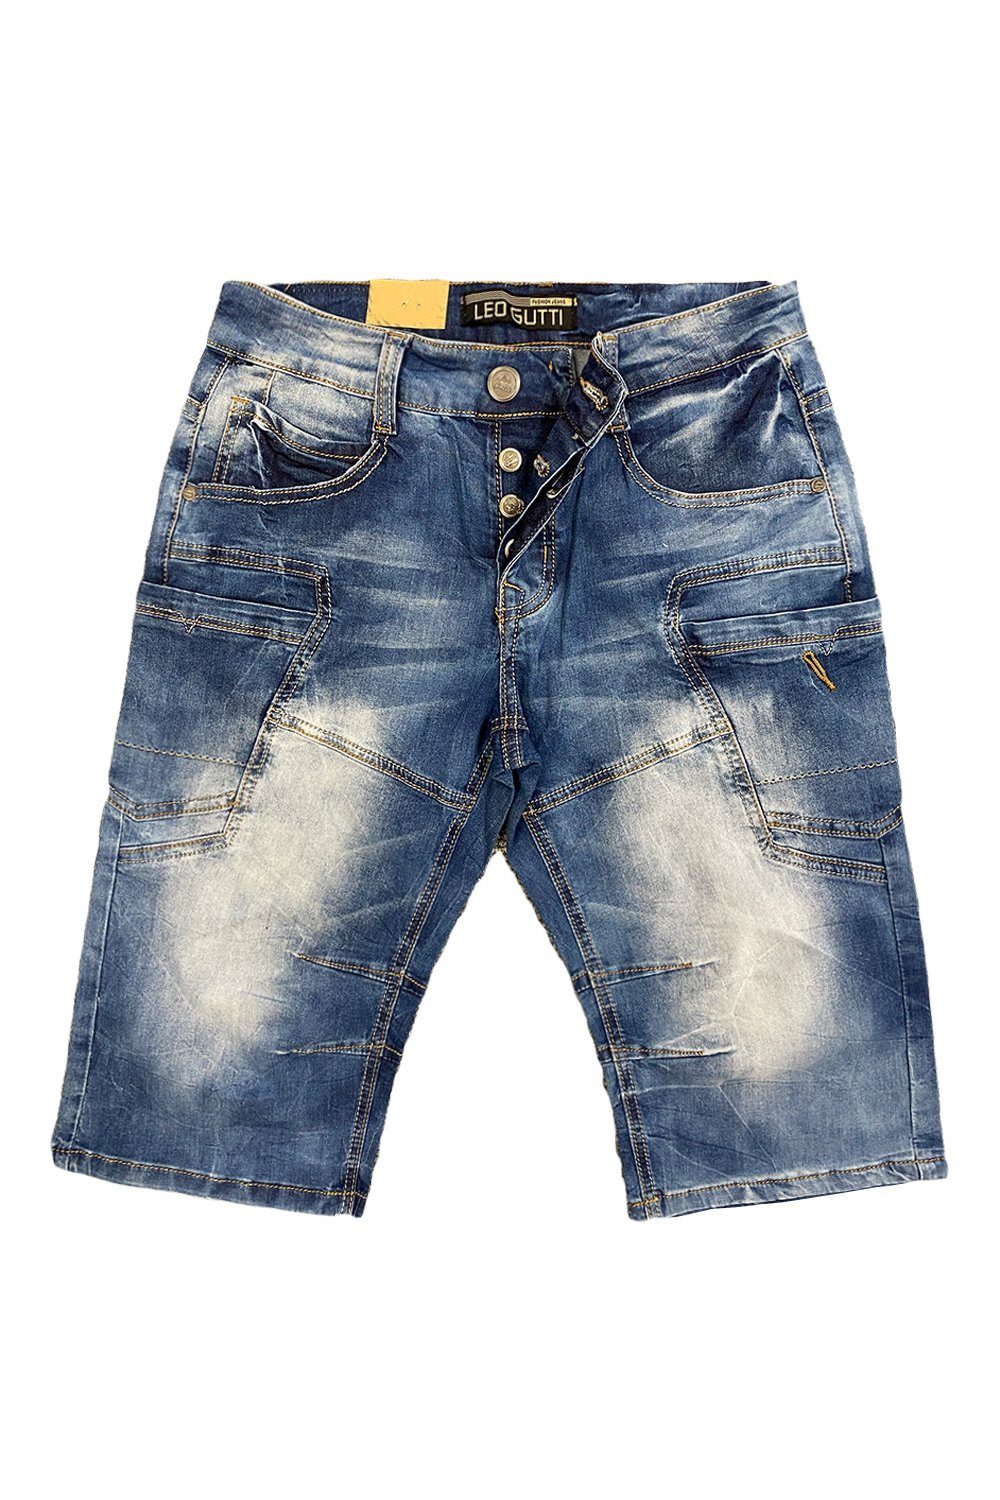 Shorts Jeansshorts Blau in Jeans 5-Pocket Hose Kurze Sommer (1-tlg) Jeans LEO GUTTI 3151